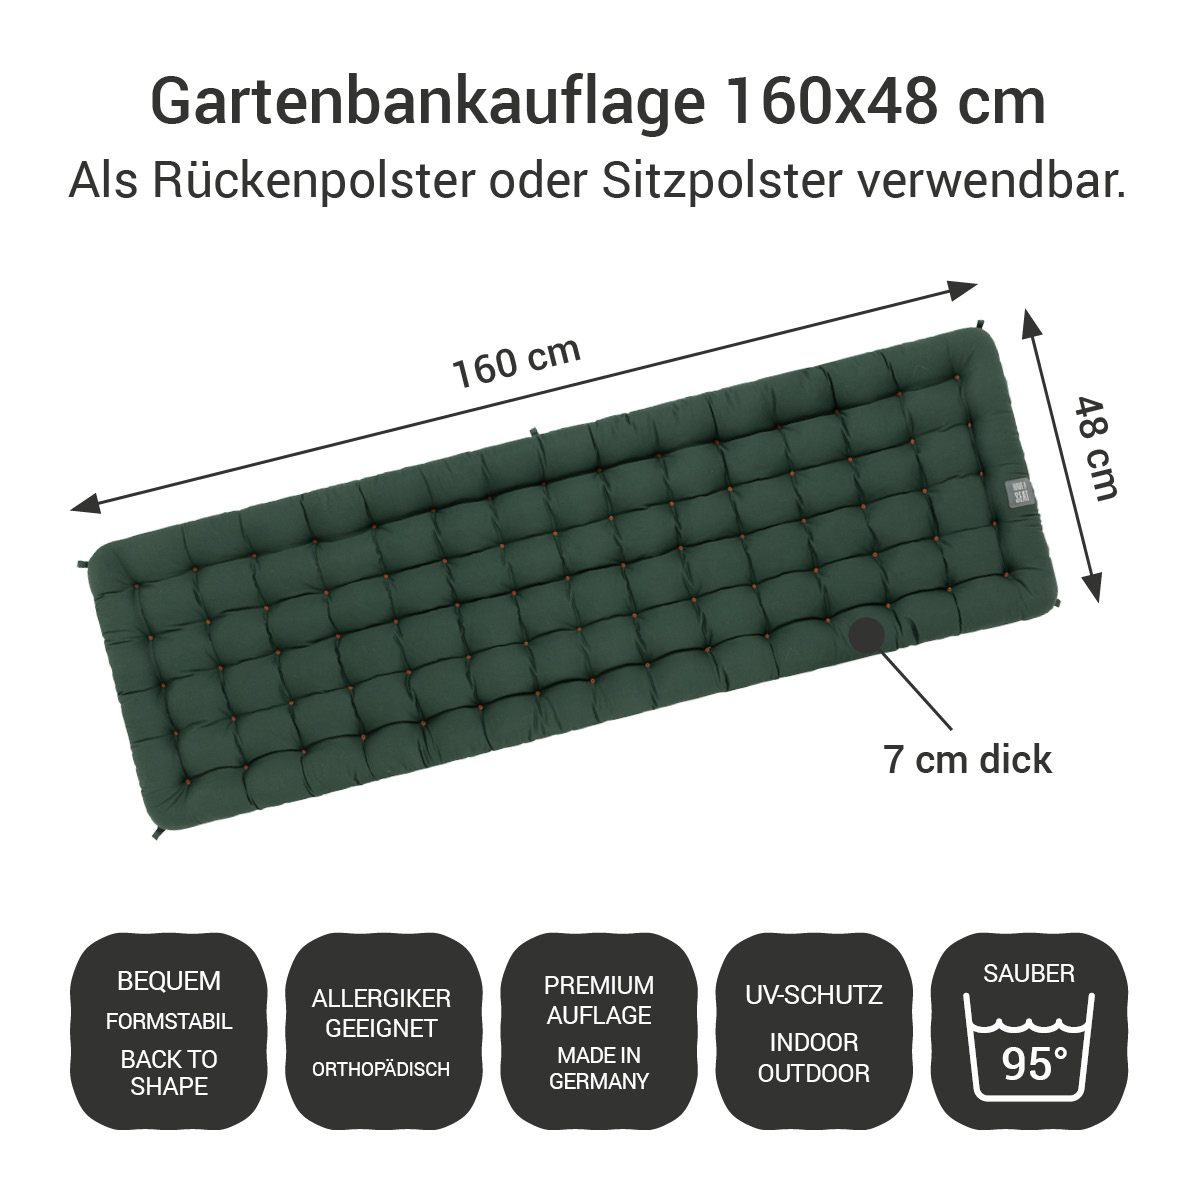 Gartenbankauflage dunkelgrün | 160x48 cm / 160 x 50 cm | bequem & orthopädisch, komplett im Ganzen waschbar bis 95°C, wetterfest, Made in Germany